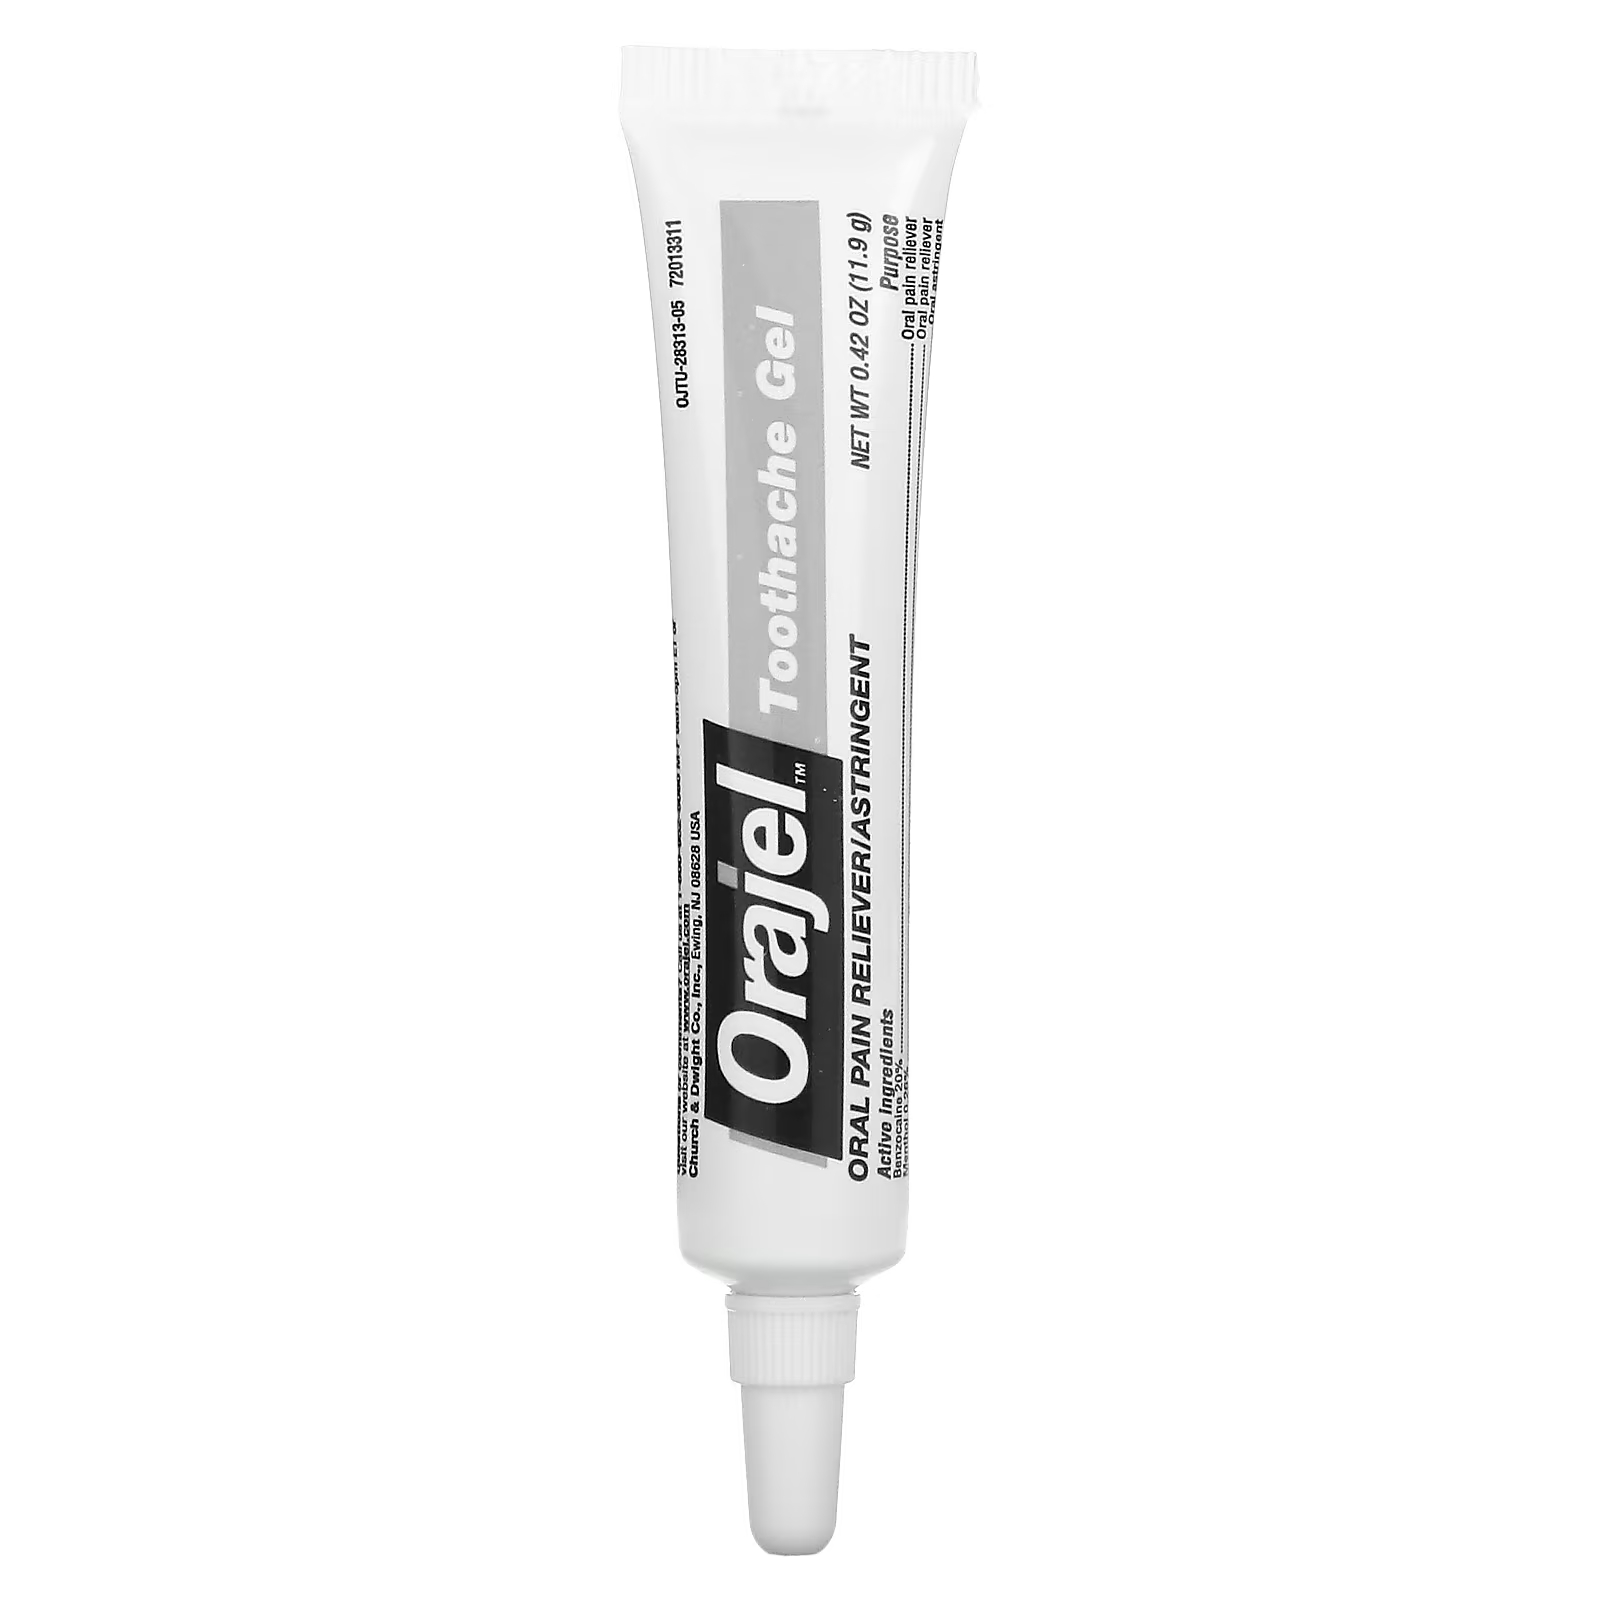 Гель обезболивающий Orajel 3x для лечения зубной боли и десен